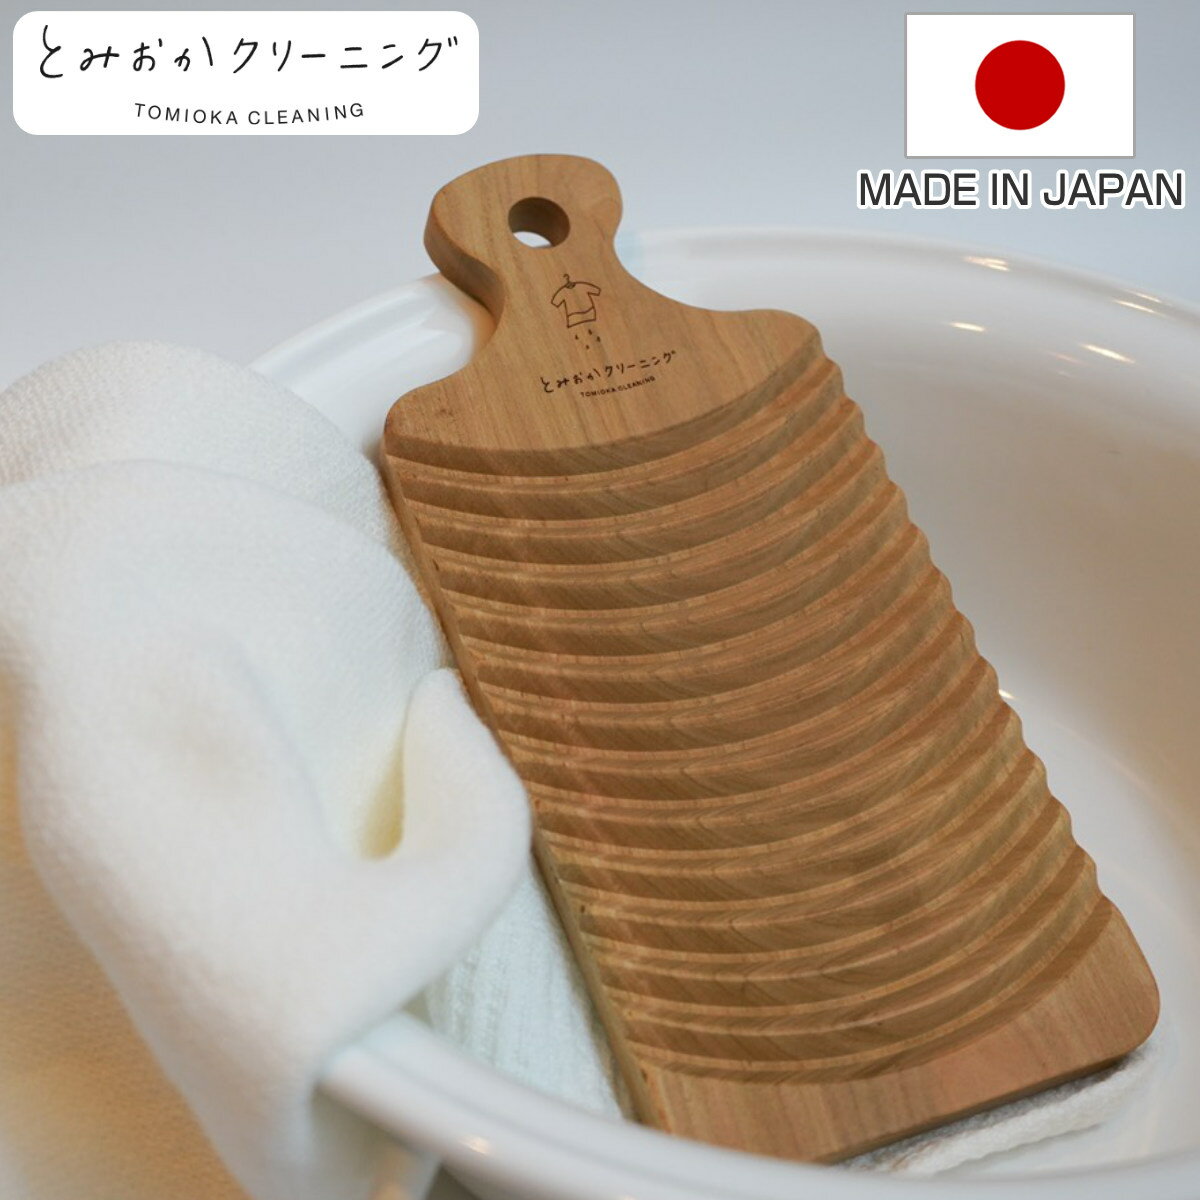 洗濯板 とみおかクリーニング さくらの洗濯板 （ 桜 天然木 手洗い 予洗い 洗たく 洗濯 日本製 ランドリーグッズ 洗…